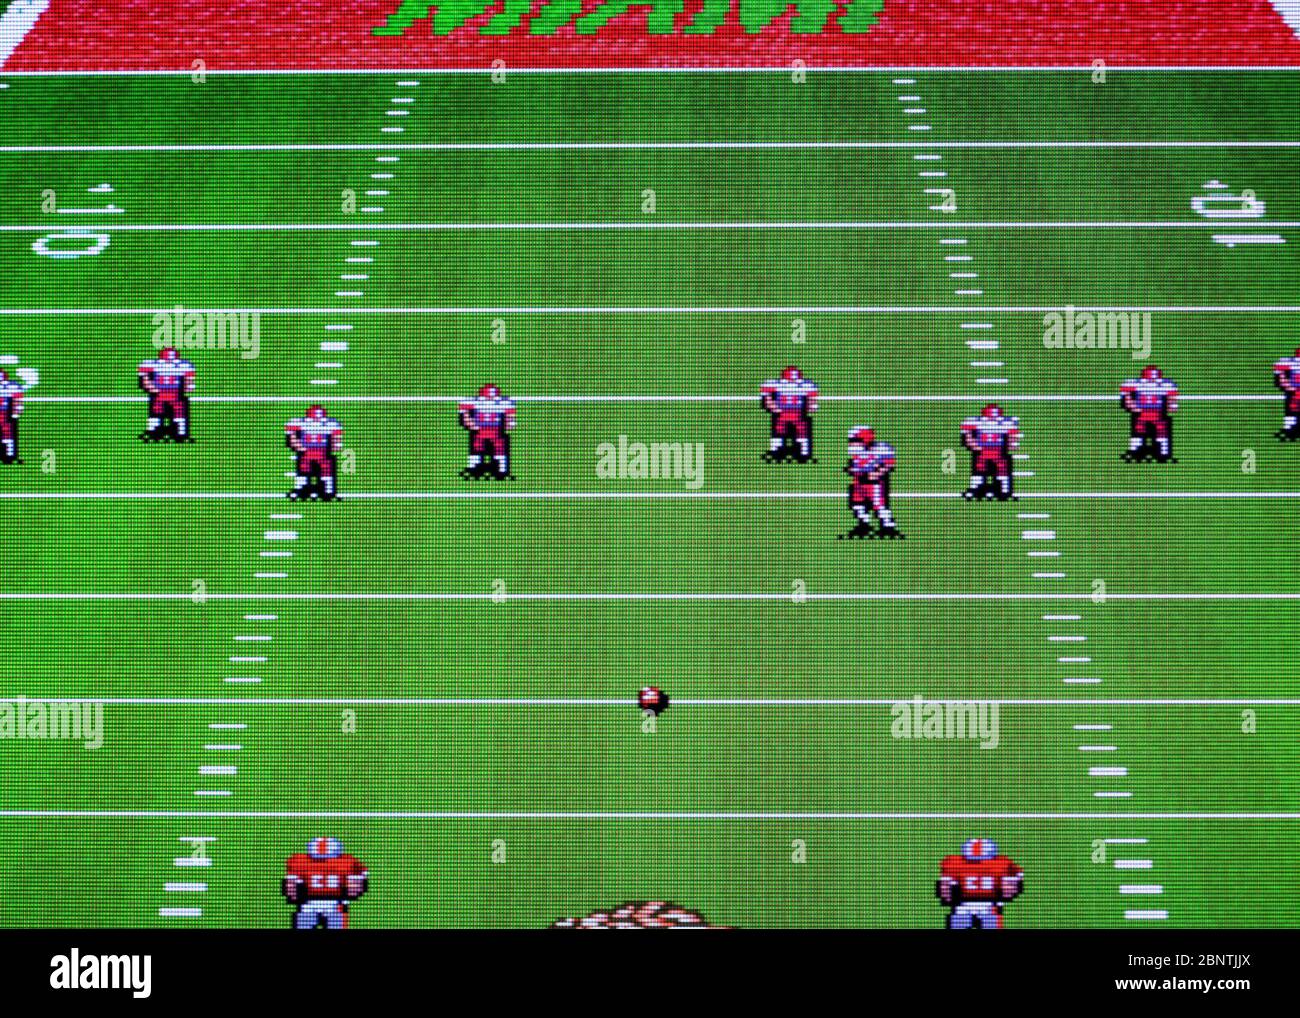 Bill Walsh College Football - SNES Super Nintendo - nur zur redaktionellen Verwendung Stockfoto